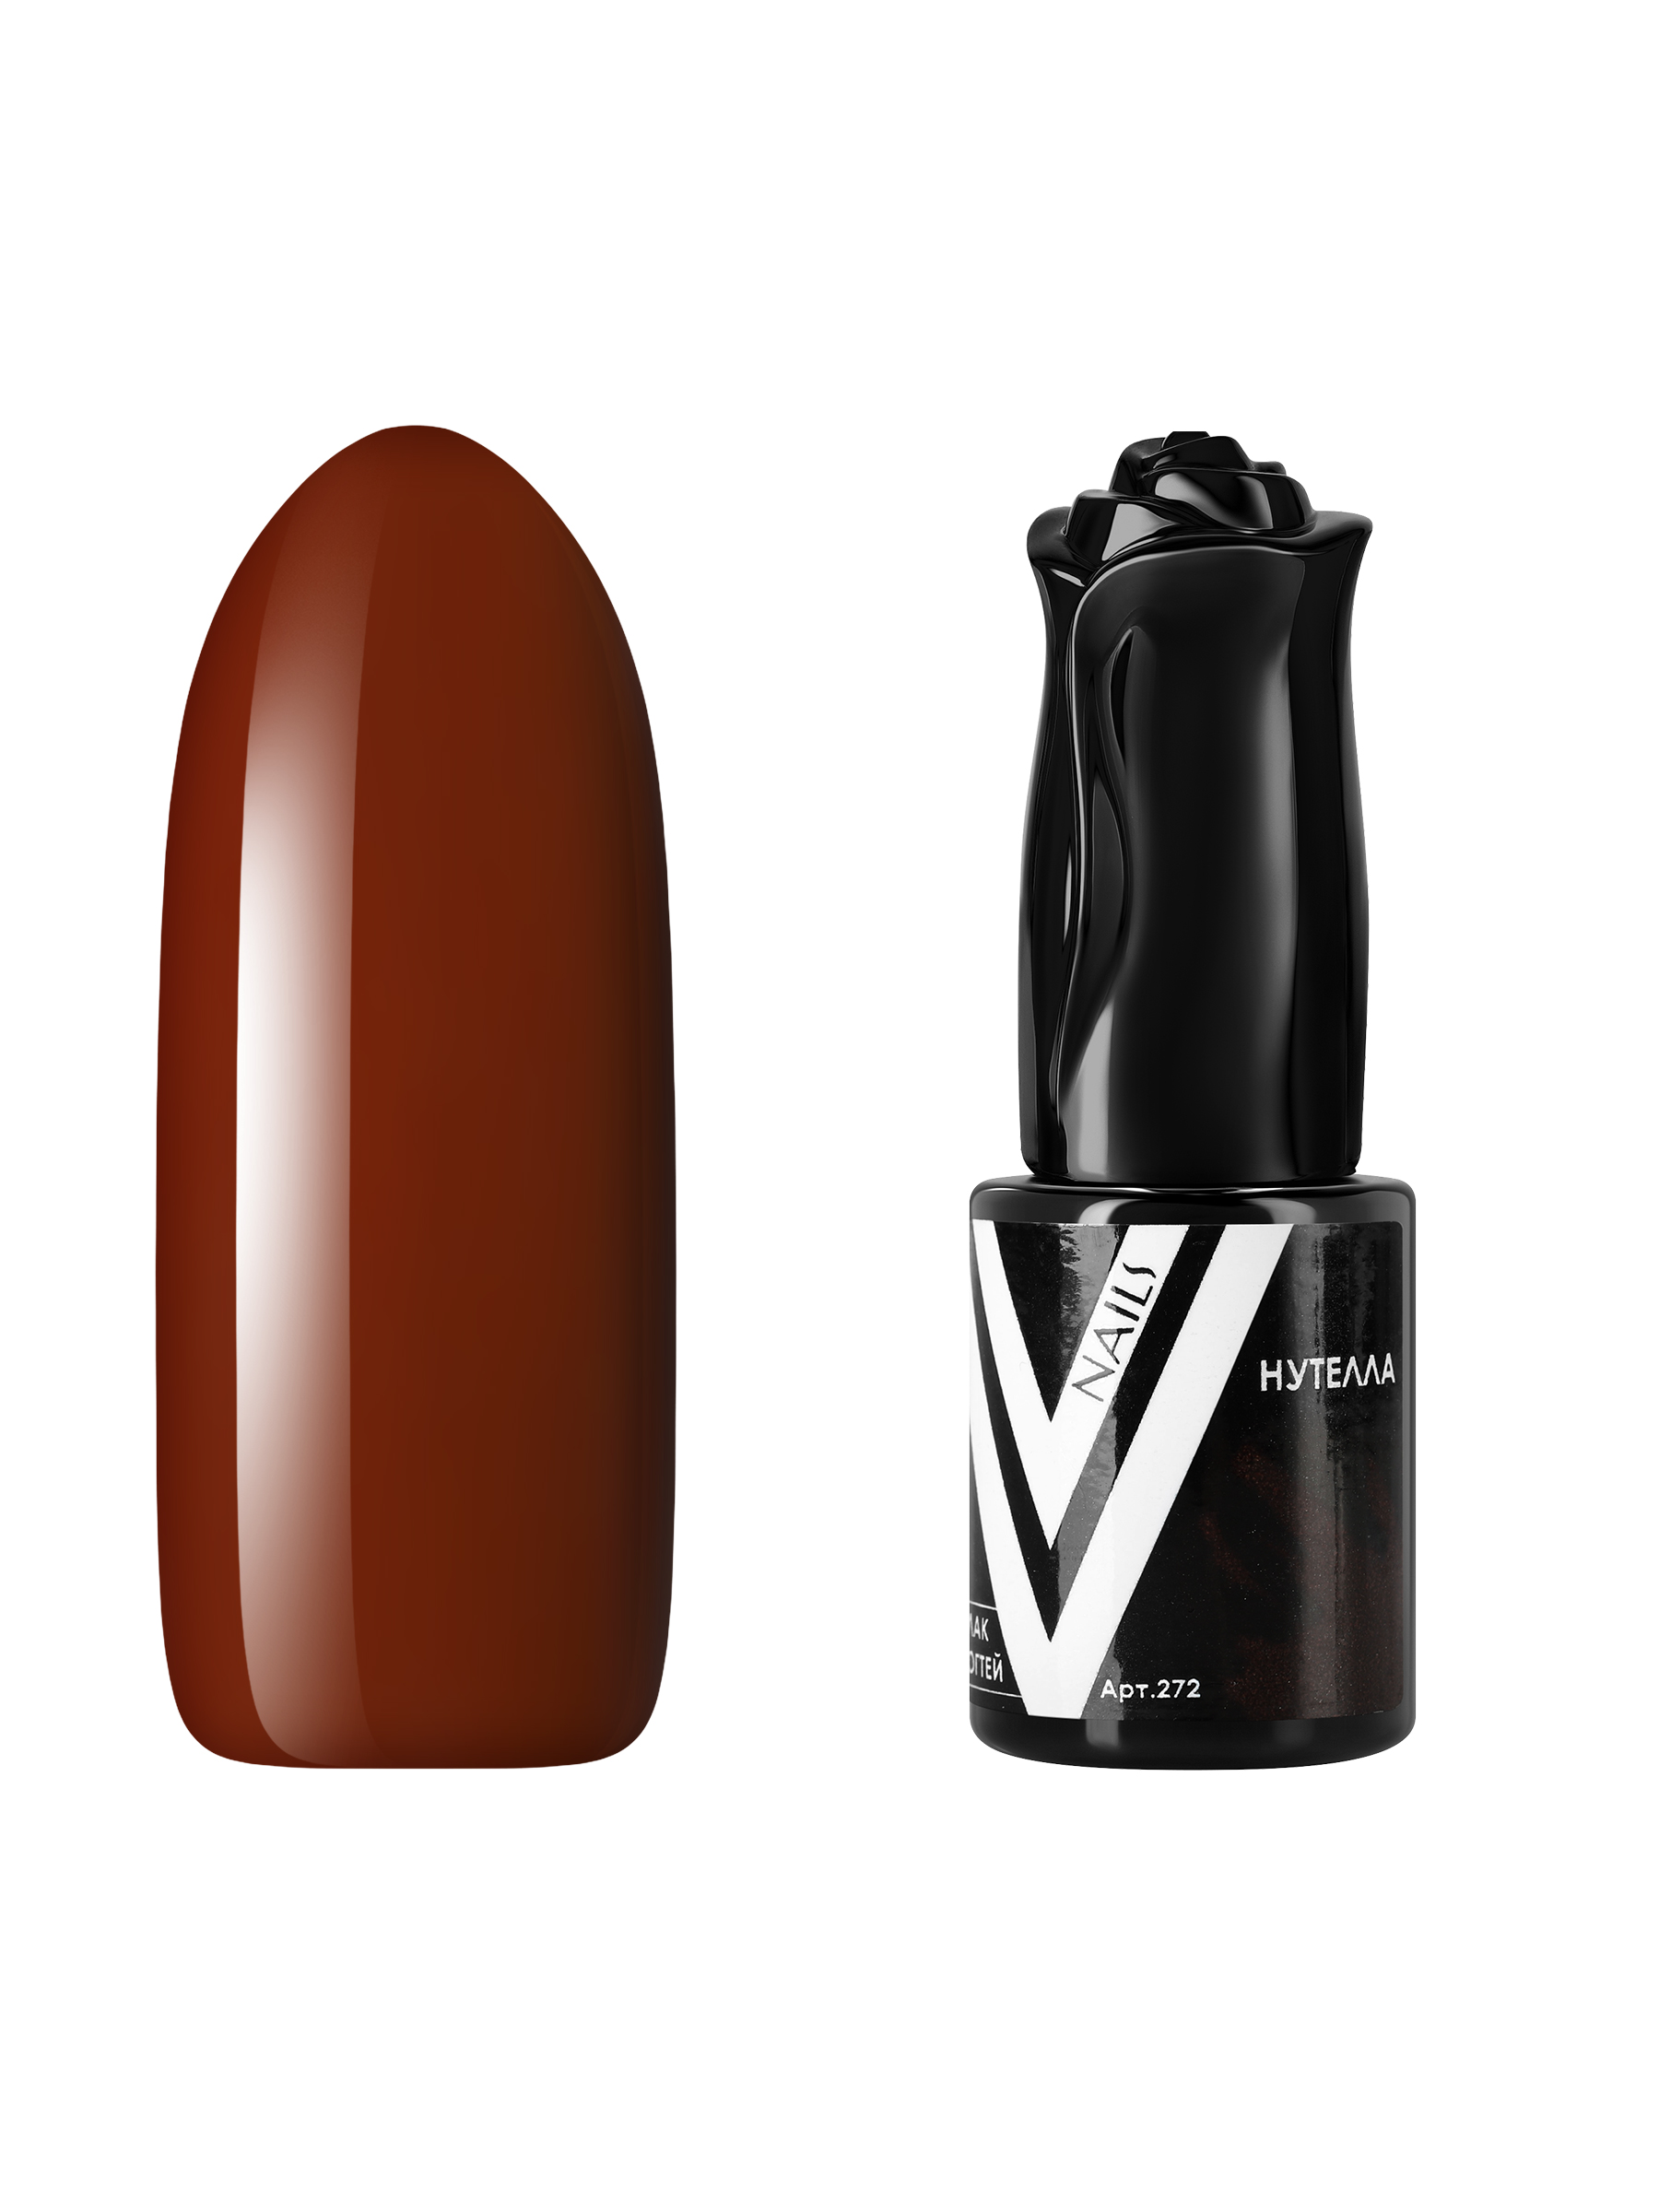 Гель-лак для ногтей Vogue Nails плотный самовыравнивающийся, коричневый, 10 мл ограждение декоративное 110 × 40 см подсолнухи greengo